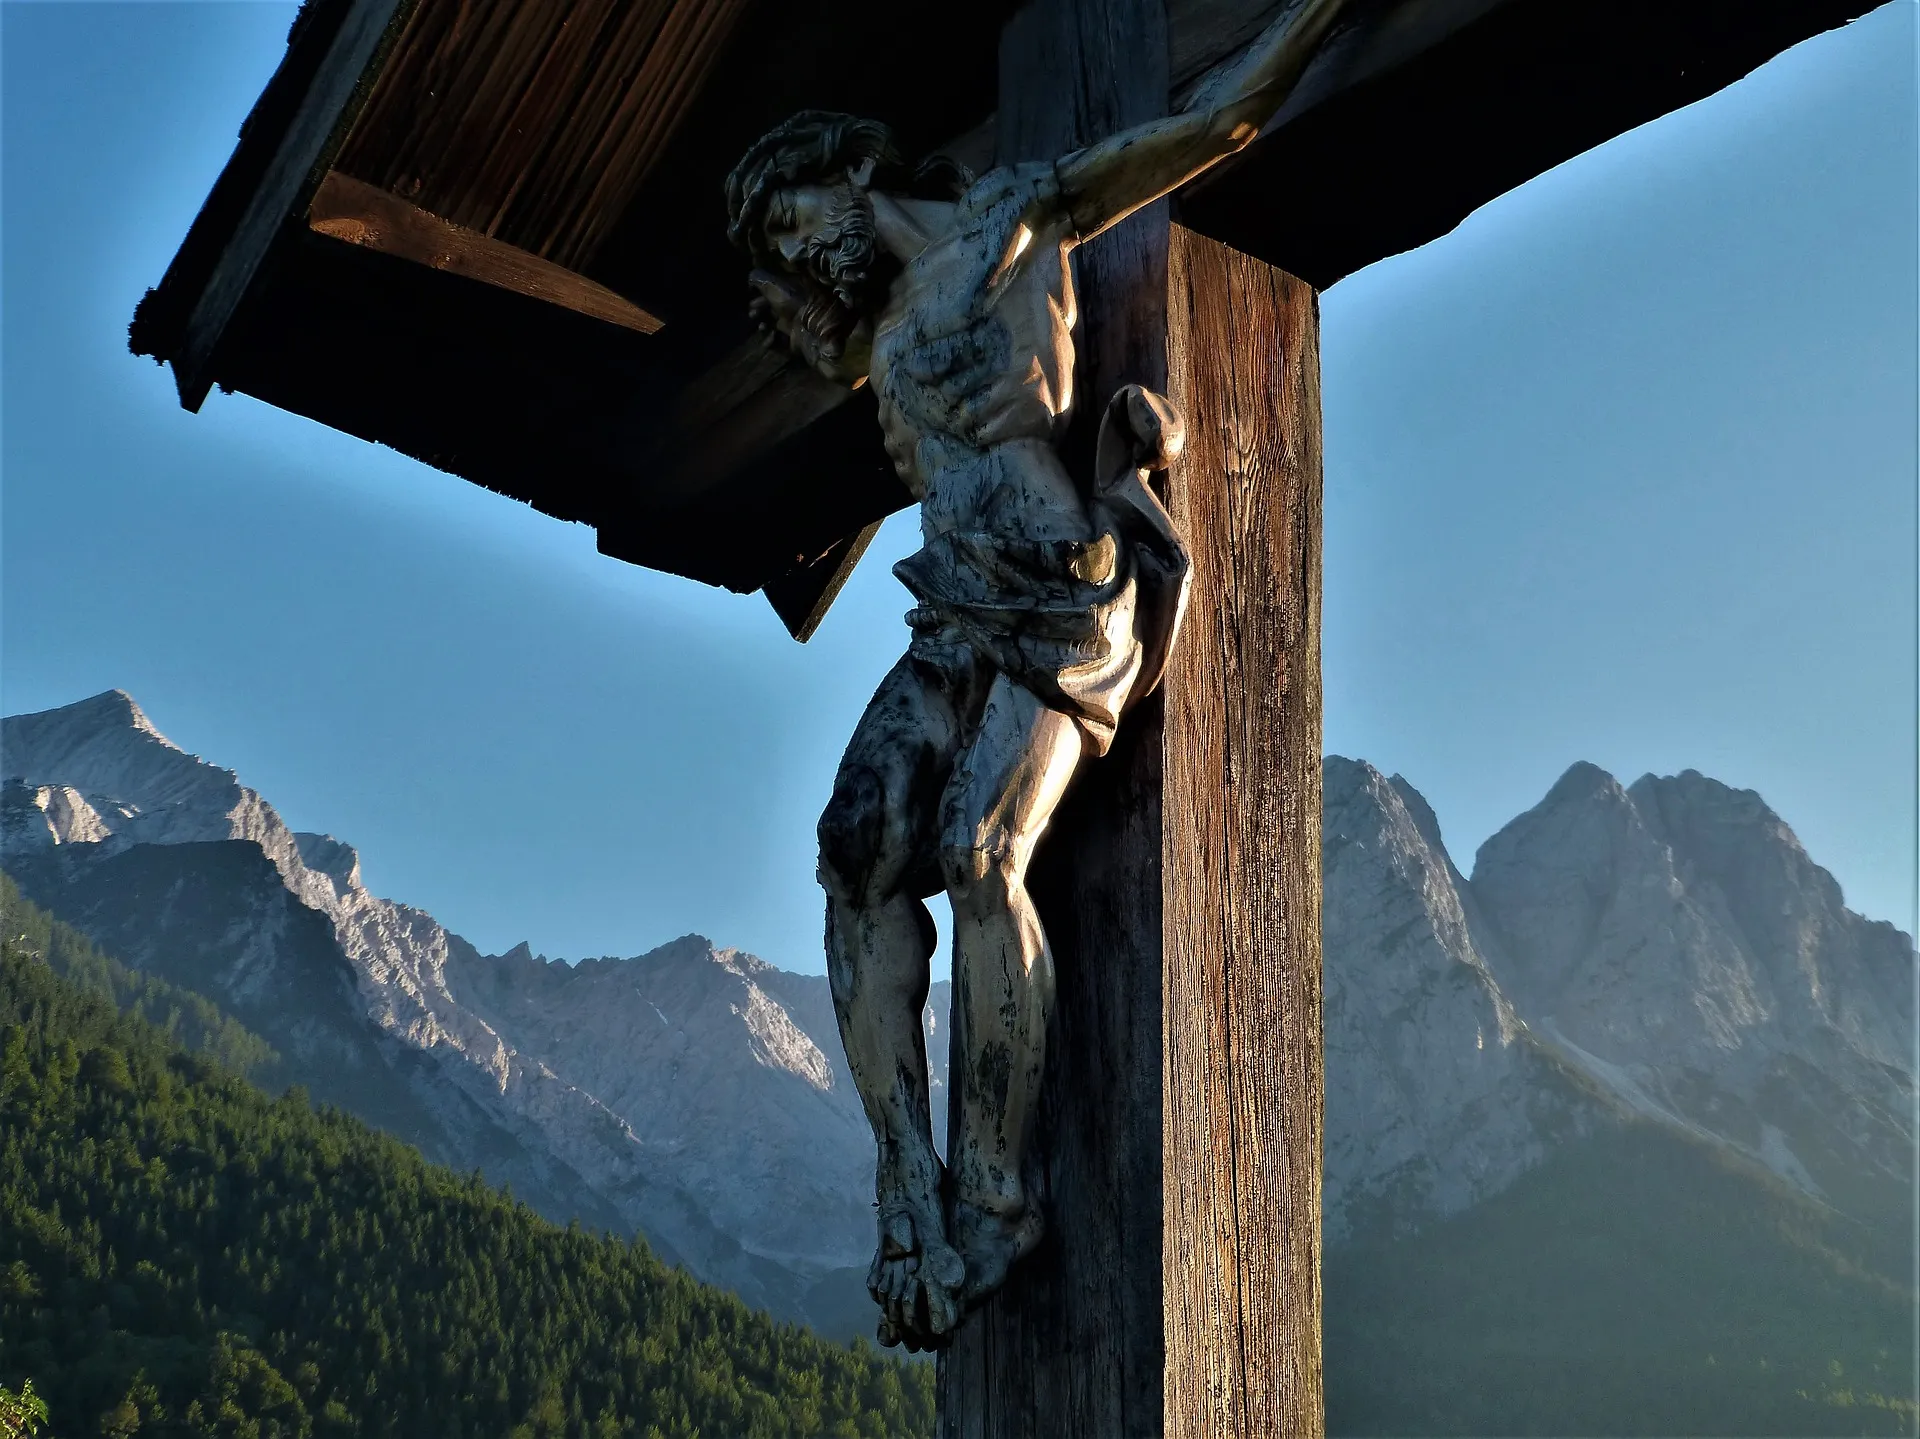 Bayern beschließt Aufhängen von Kreuzen in Behörden [UPDATE